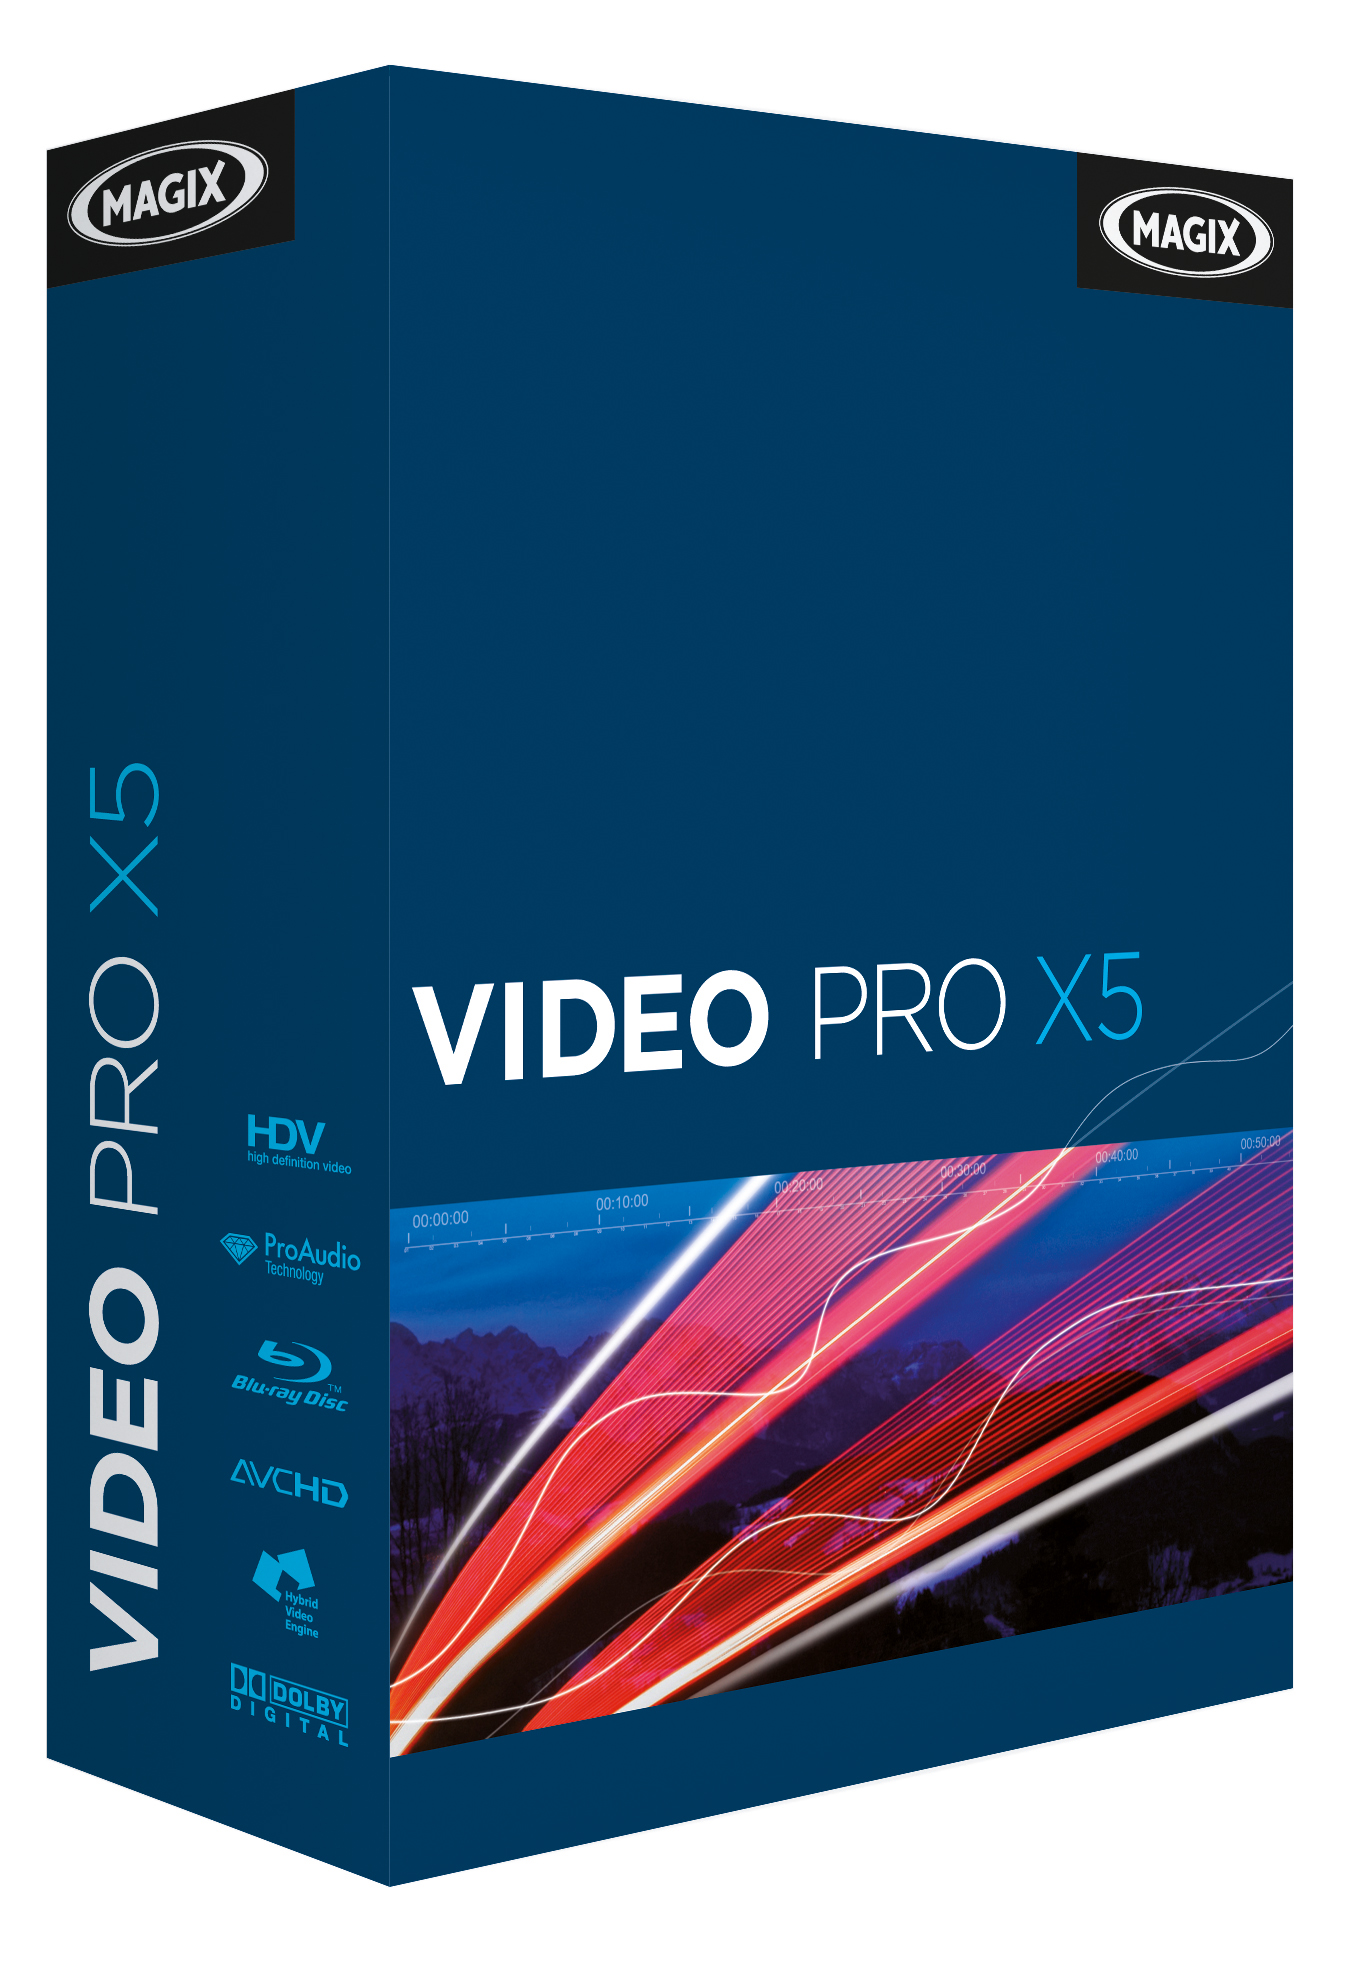 MAGIX Video Pro X15 v21.0.1.193 download the new